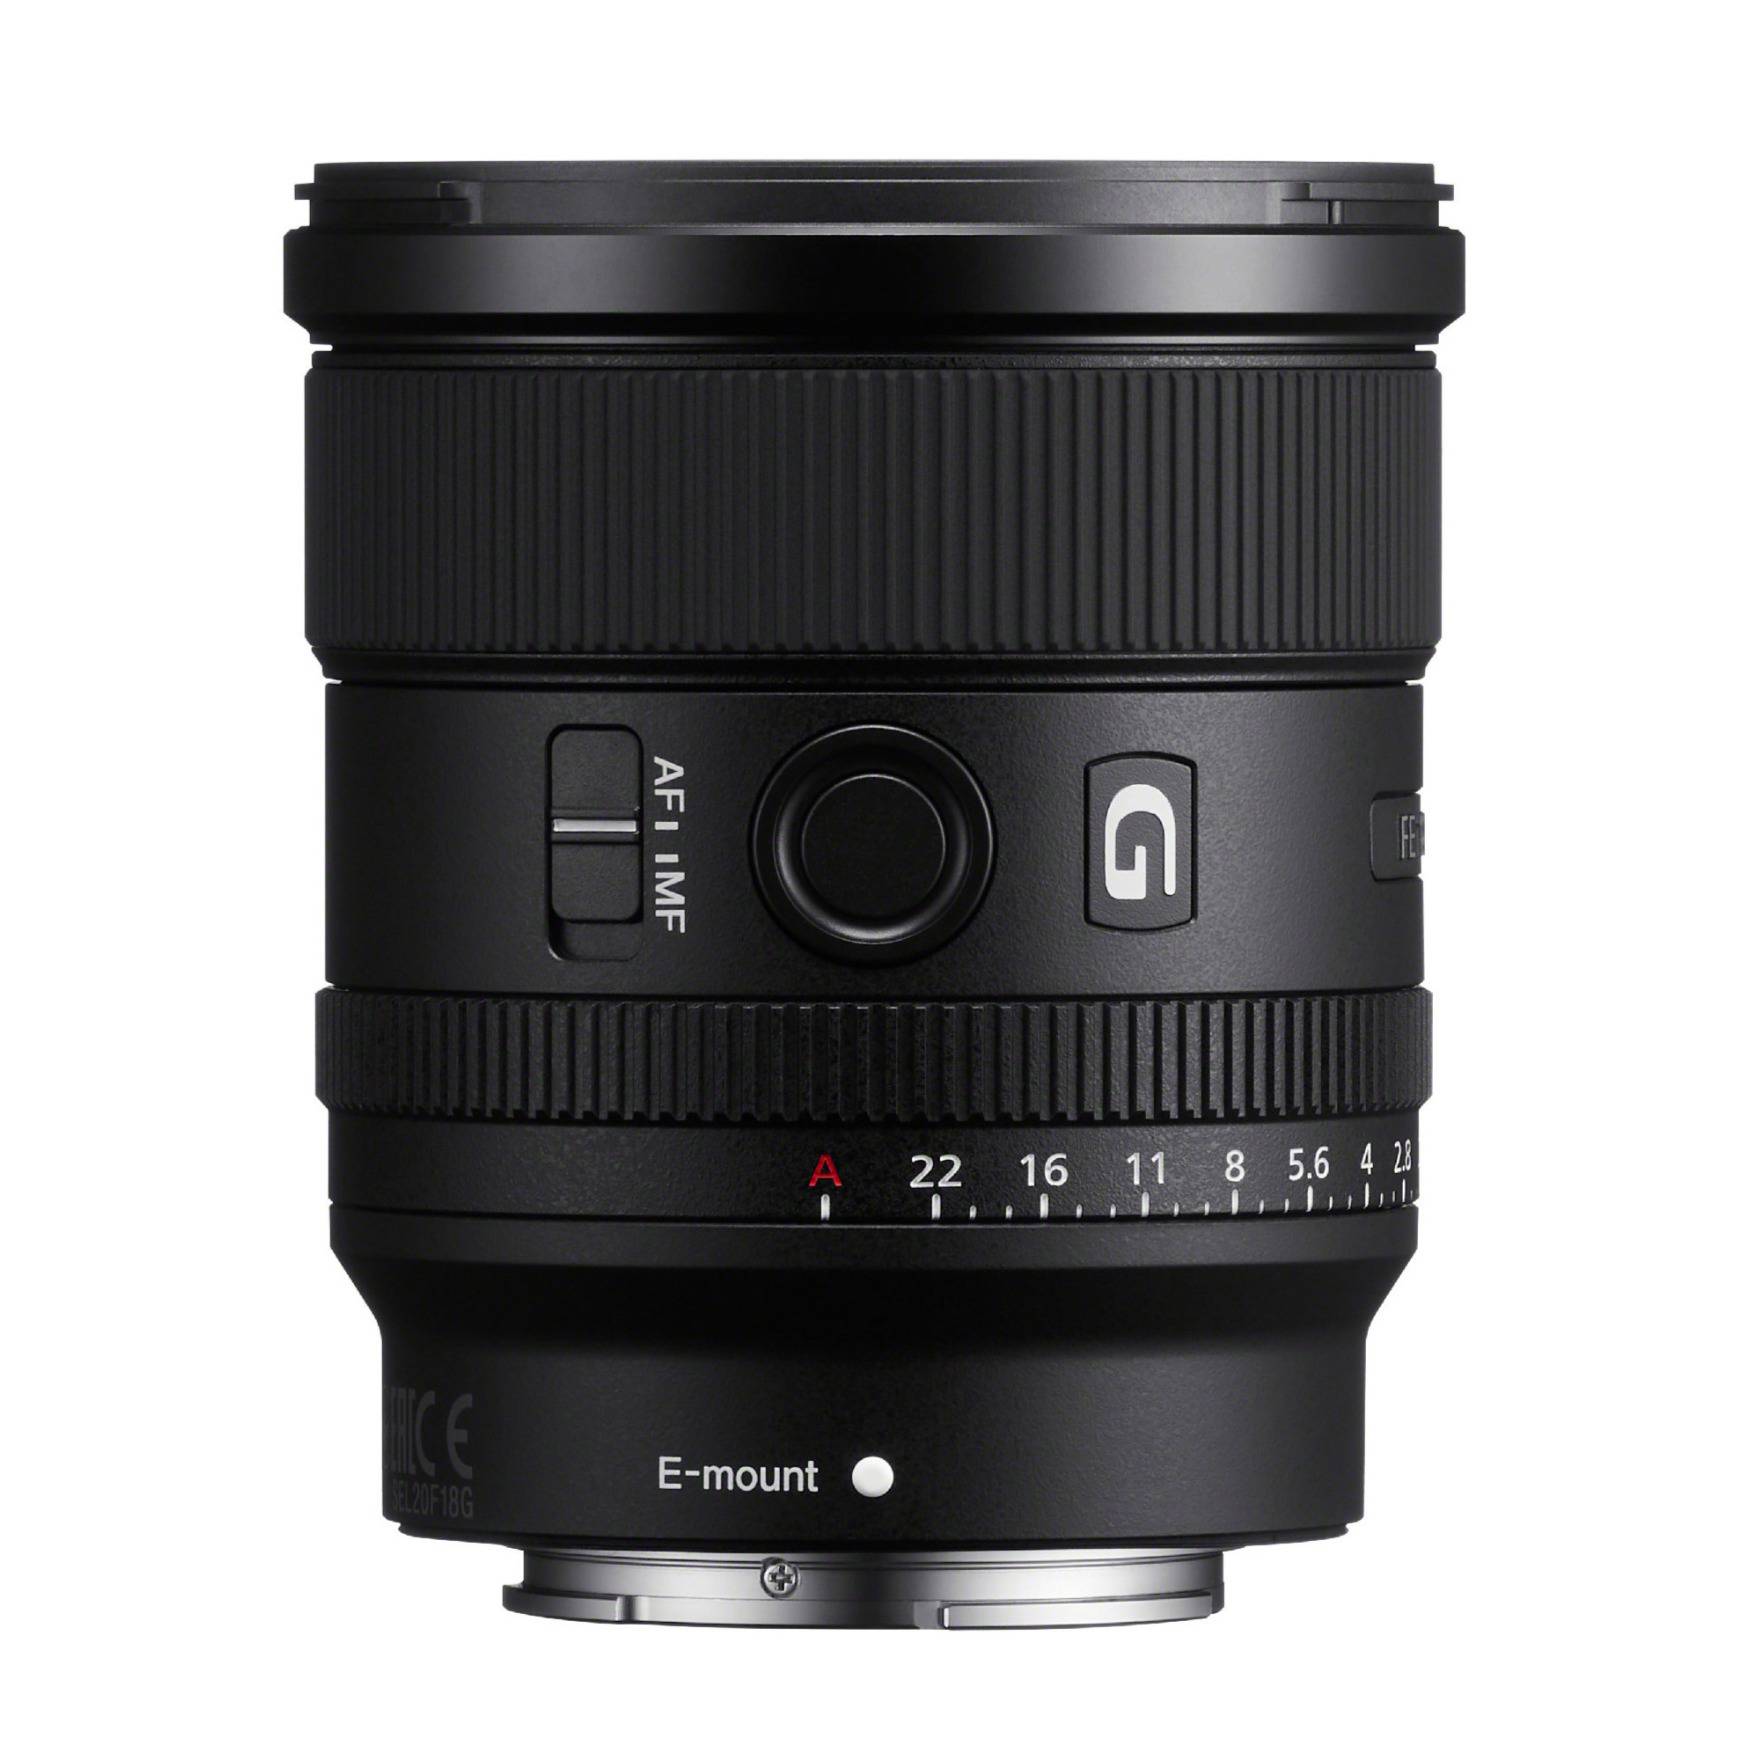 Sony FE 20mm f/1.8 G Full-Frame Large-Aperture Ultra-Wide Angle G Lens